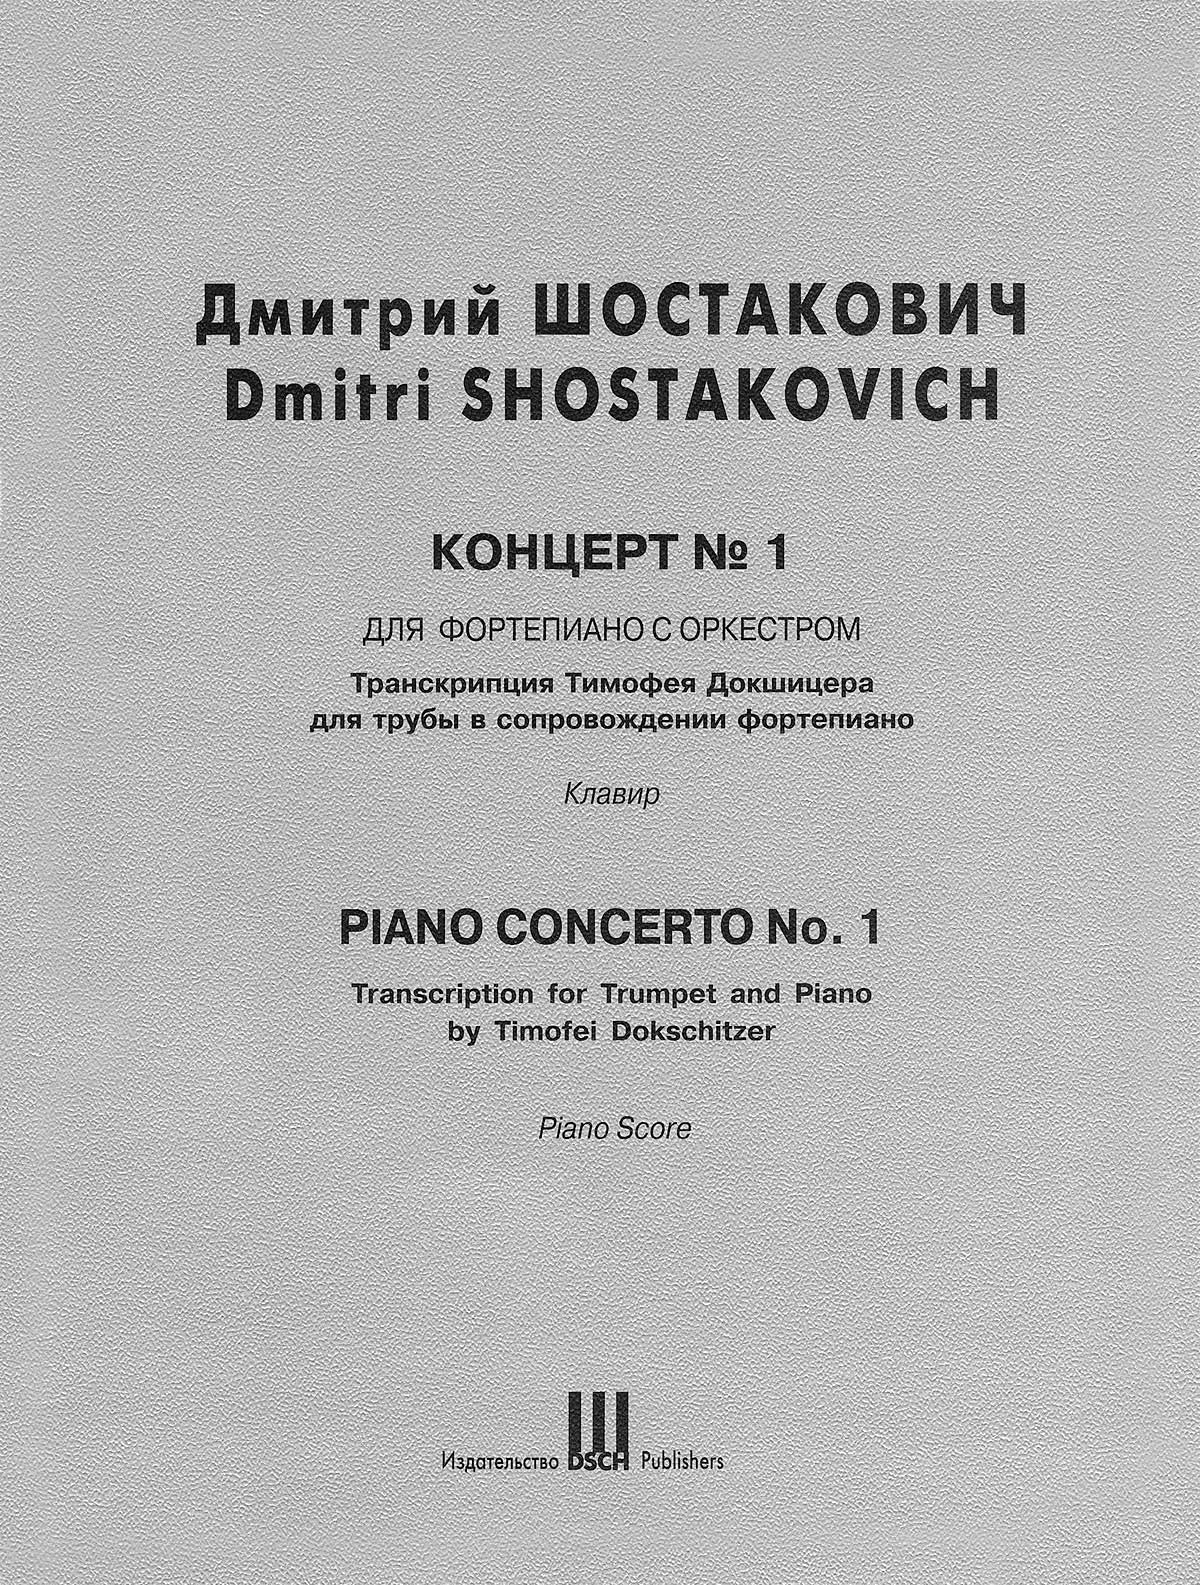 Shostakovich: Piano Concerto No. 1 (arr. for trumpet & piano)